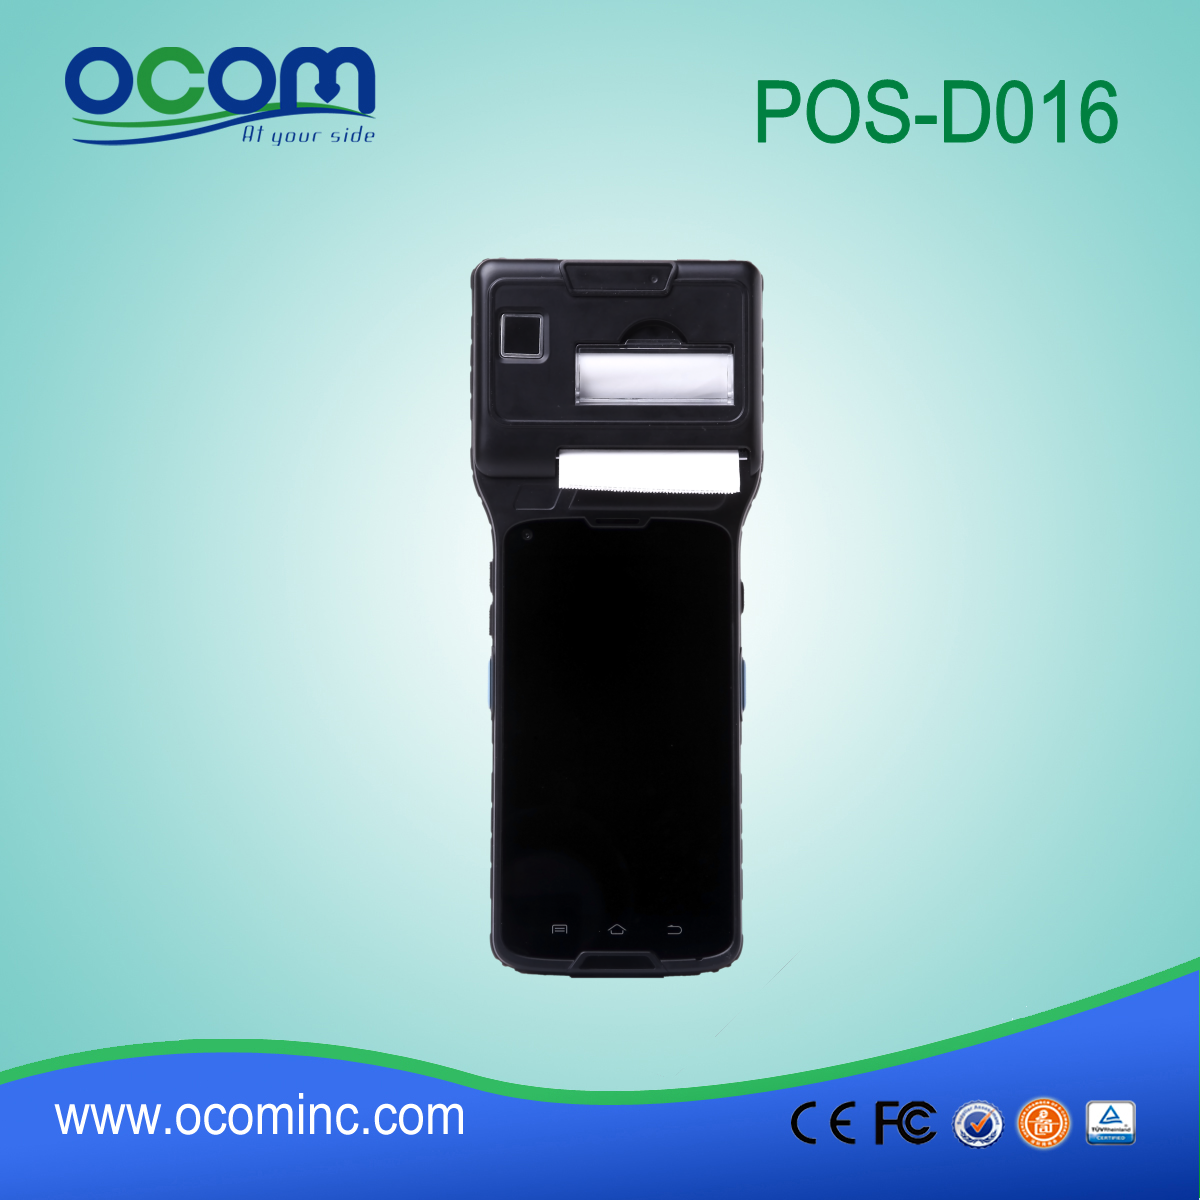 5英寸触摸屏POS终端机标配3G（WCDMA）+ WIFI +蓝牙 + GPS +摄像头+热敏打印机+ NFC（OCBS-D016）